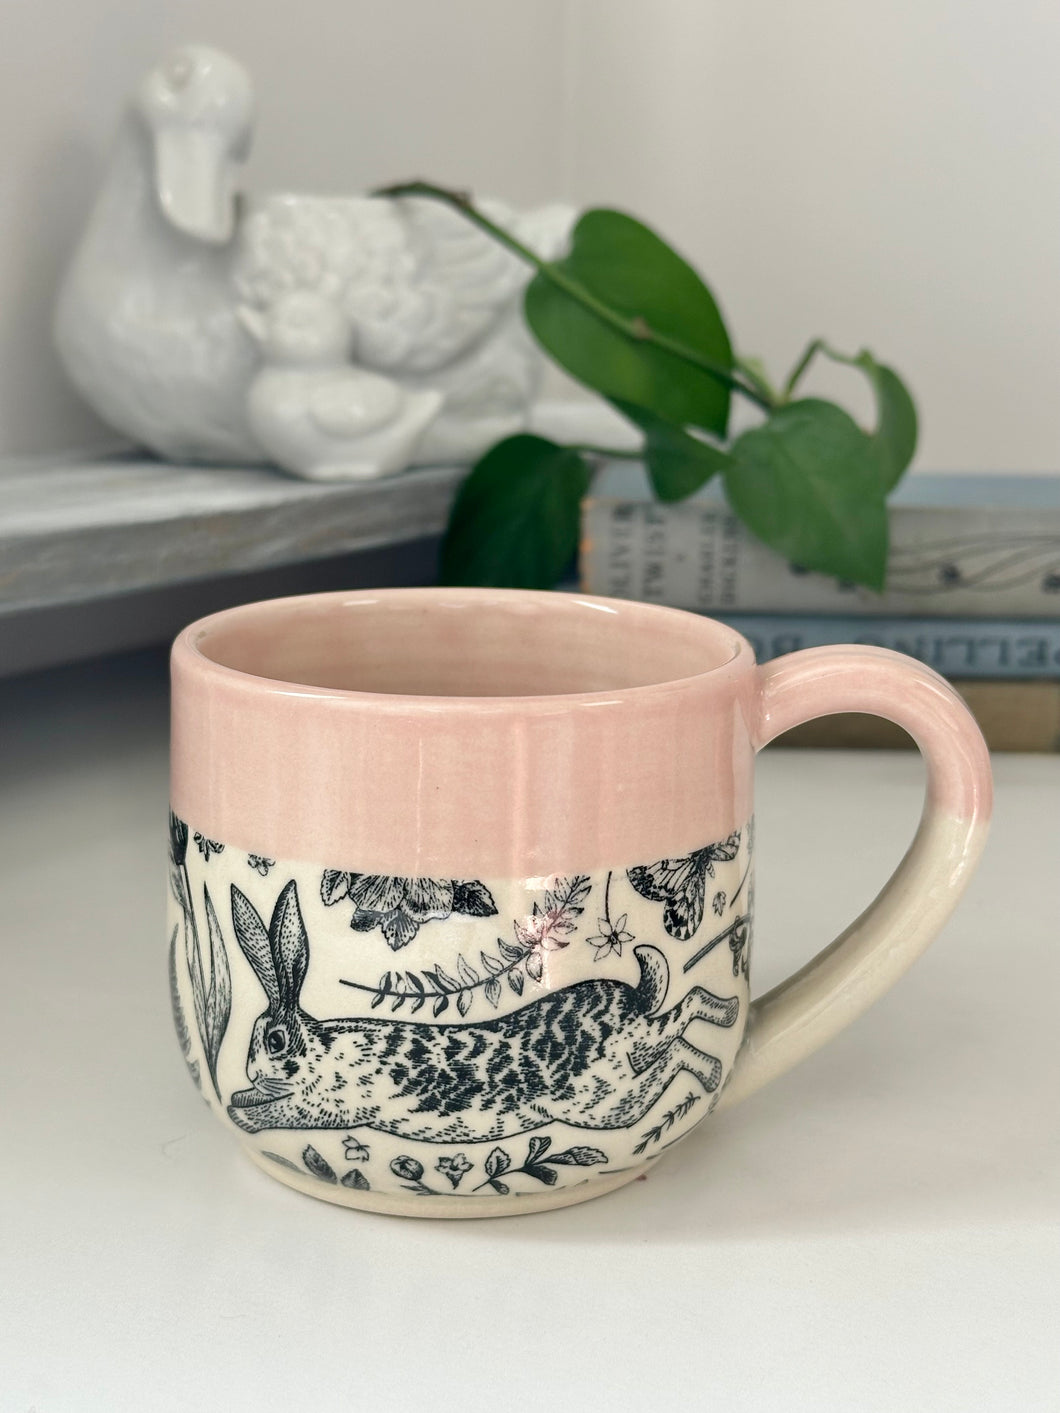 #009 - 14 oz. Bunny mug with pink rim